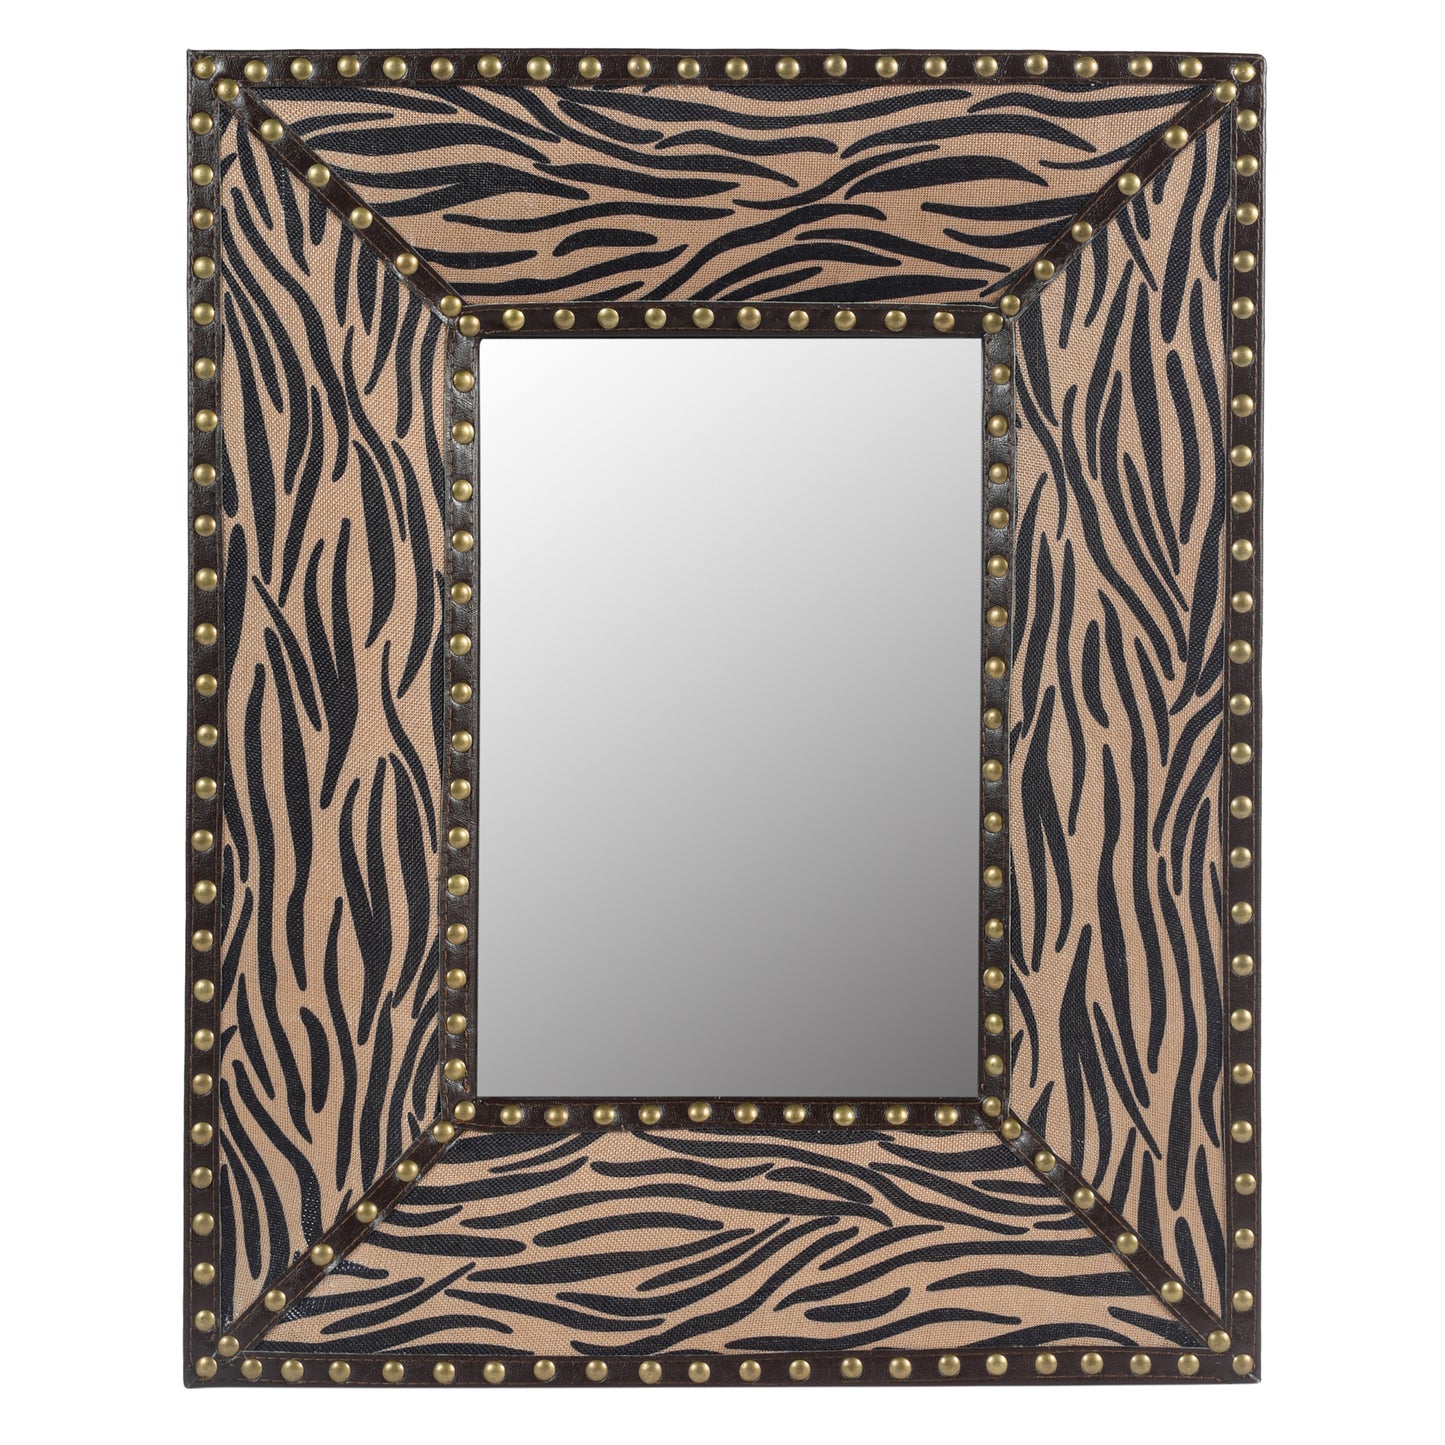 Minerva Zebra Pattern Wall Mirrors Brown